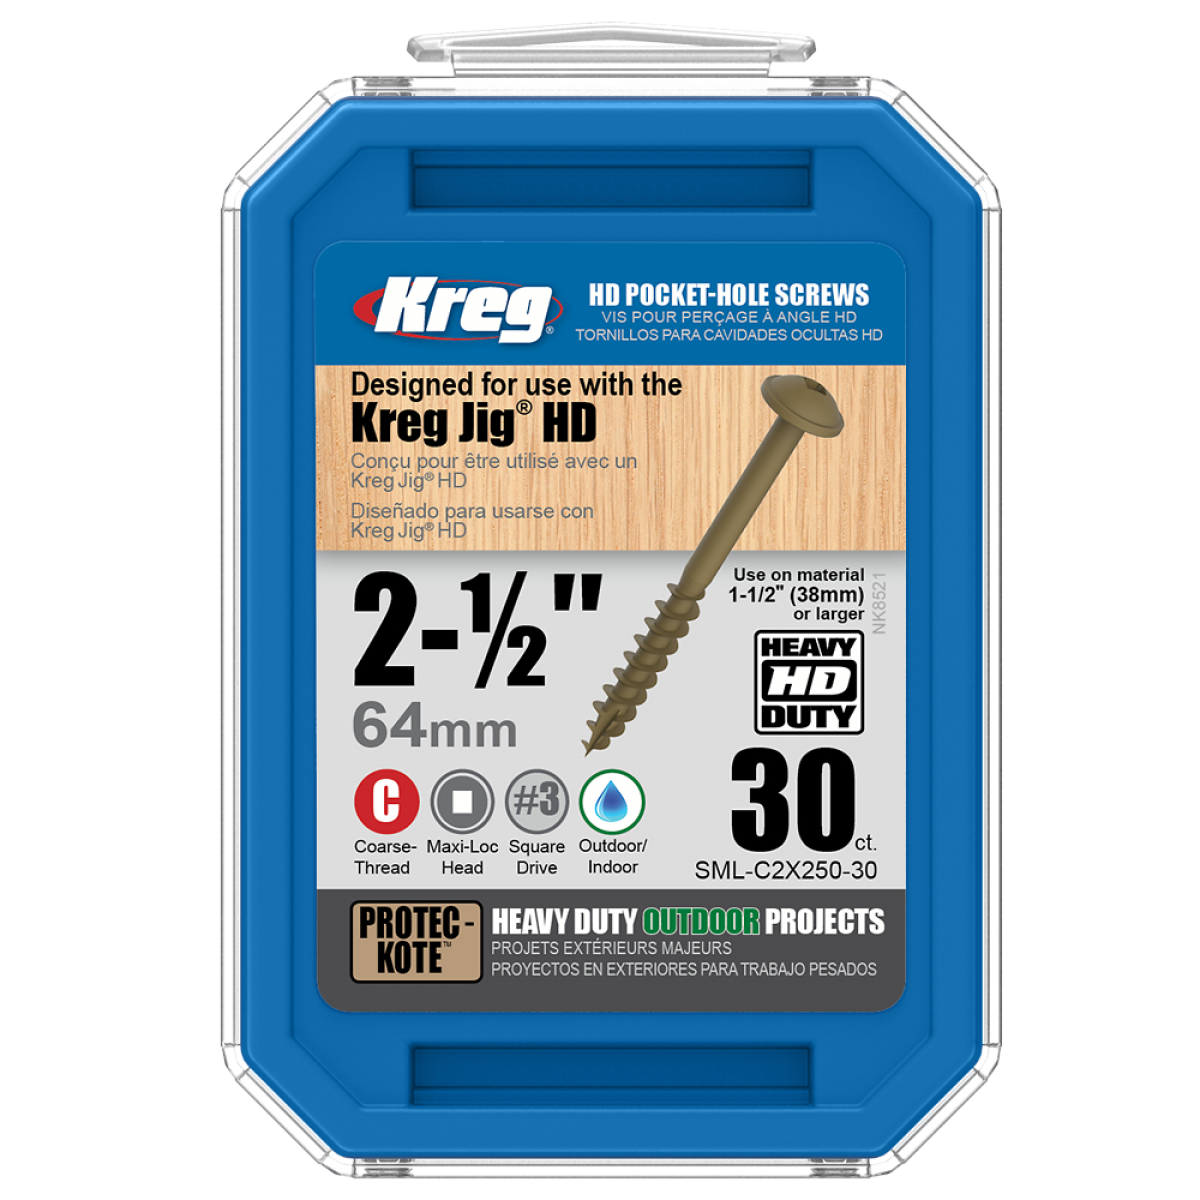 Vis pour guide Kreg Jig HD 64 mm SML-C2X250-30 - Boite de 30 vis